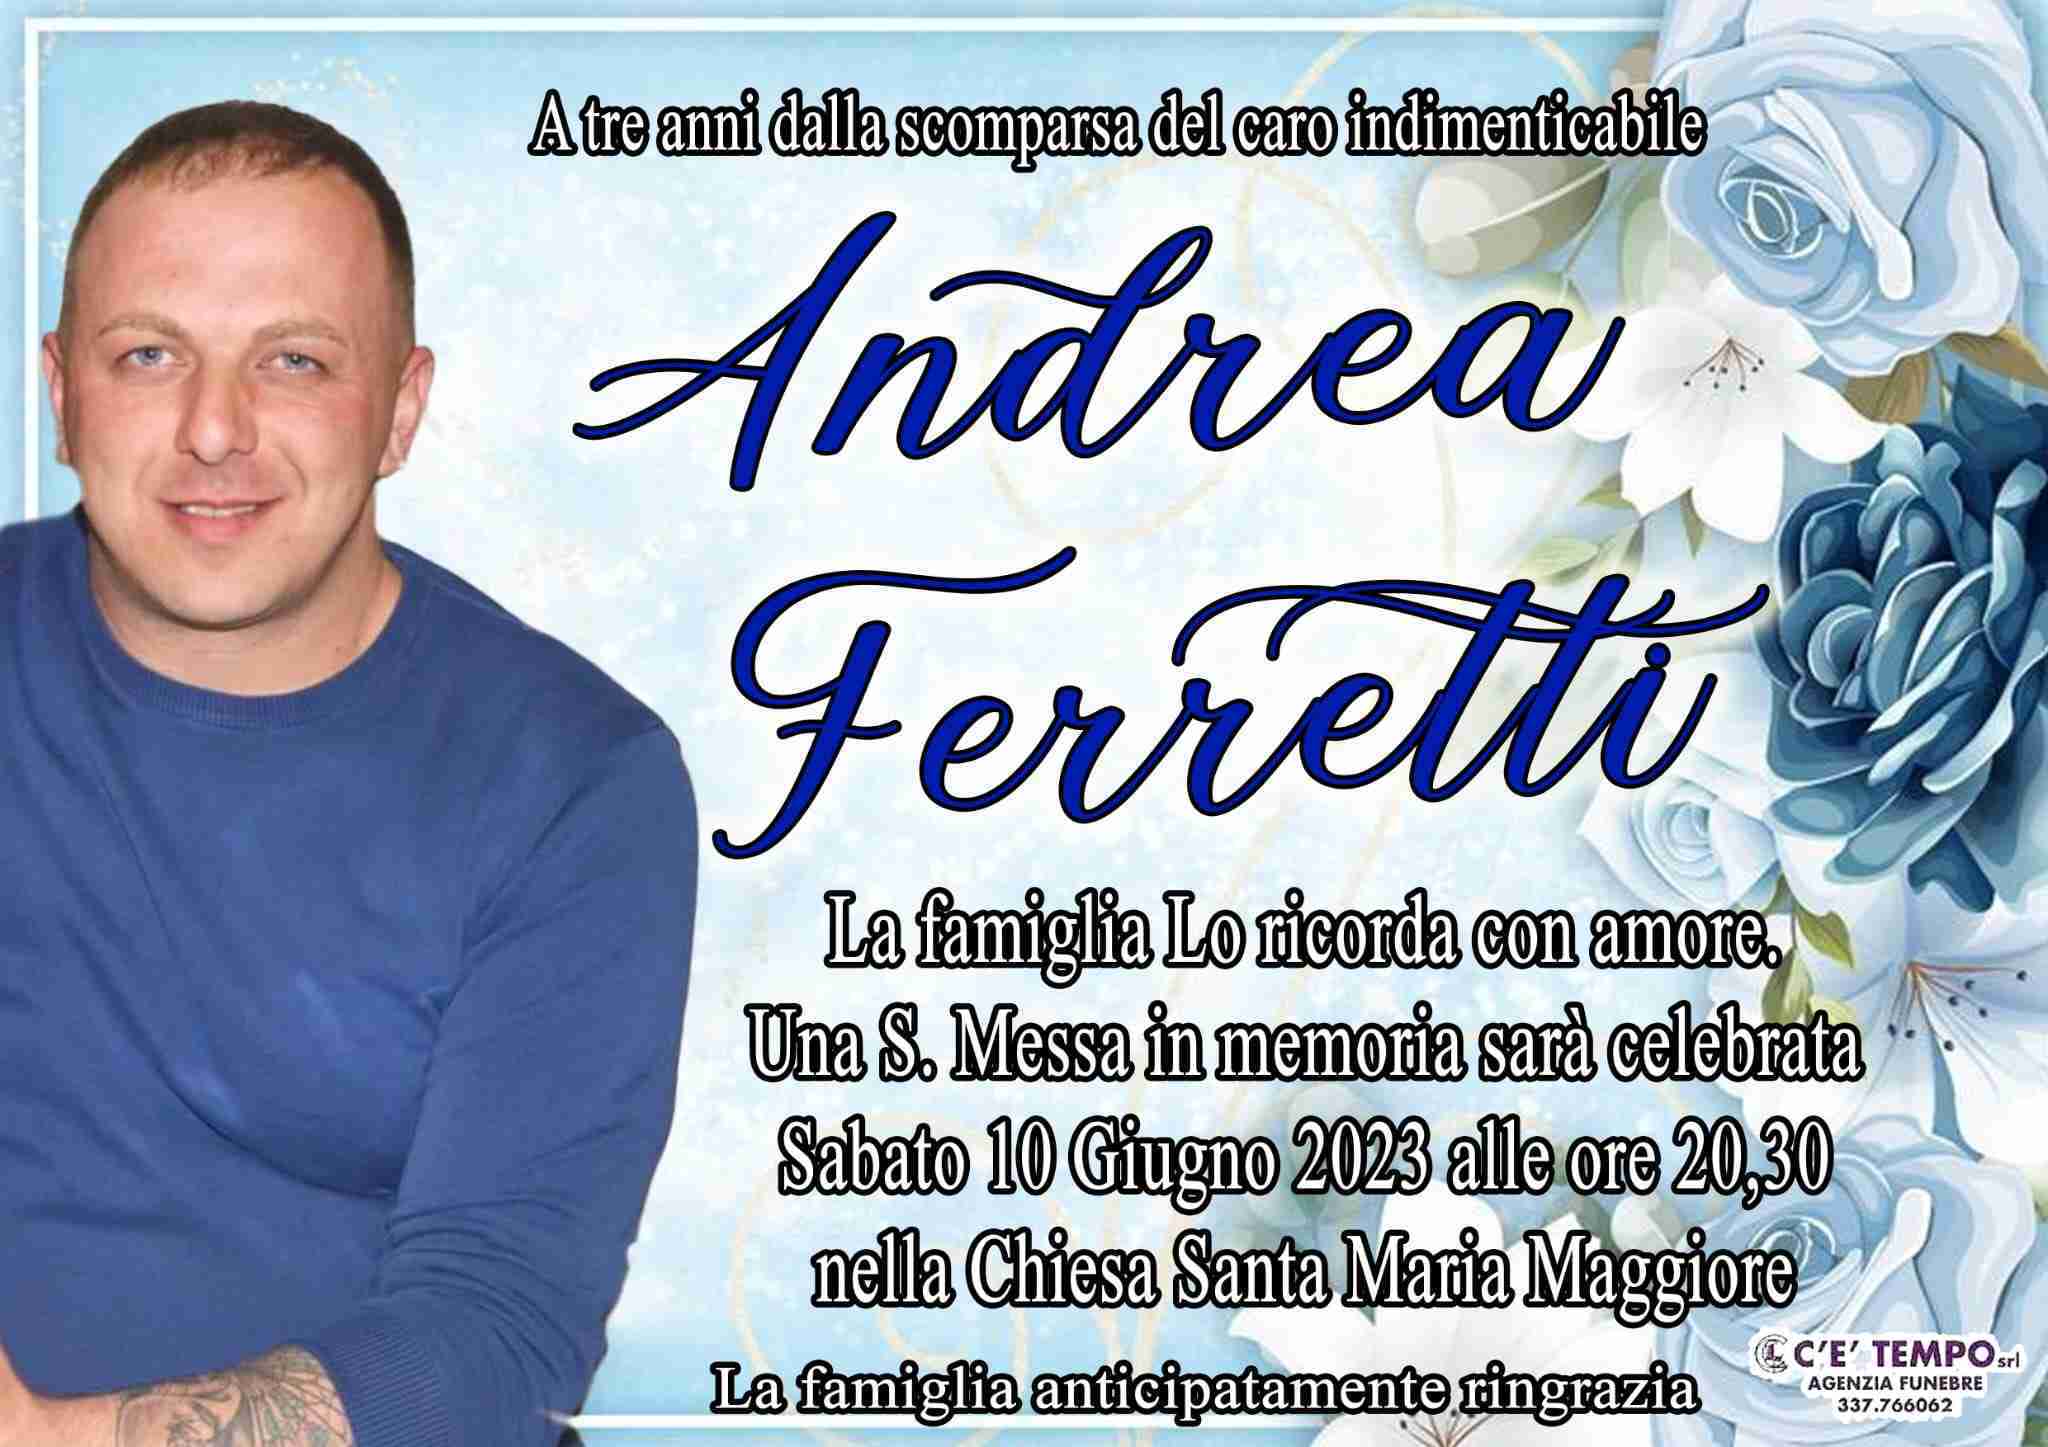 Andrea Ferretti